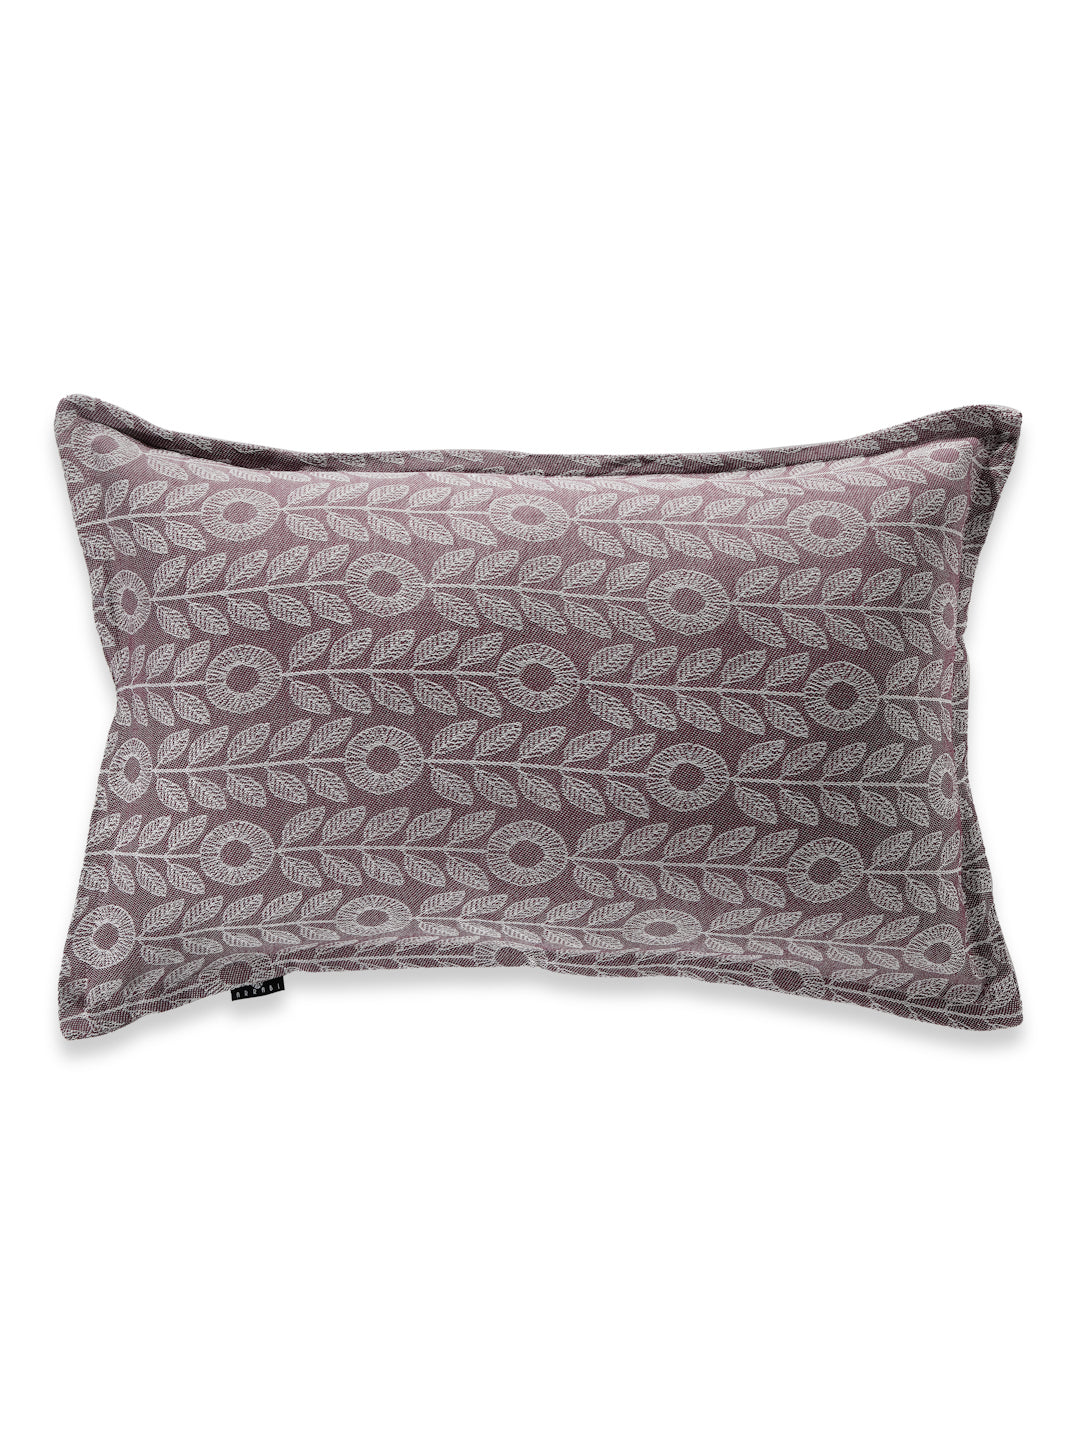 Arrabi Purple Floral Handwoven Cotton Set of 2 Pillow Covers (70 x 45 cm)